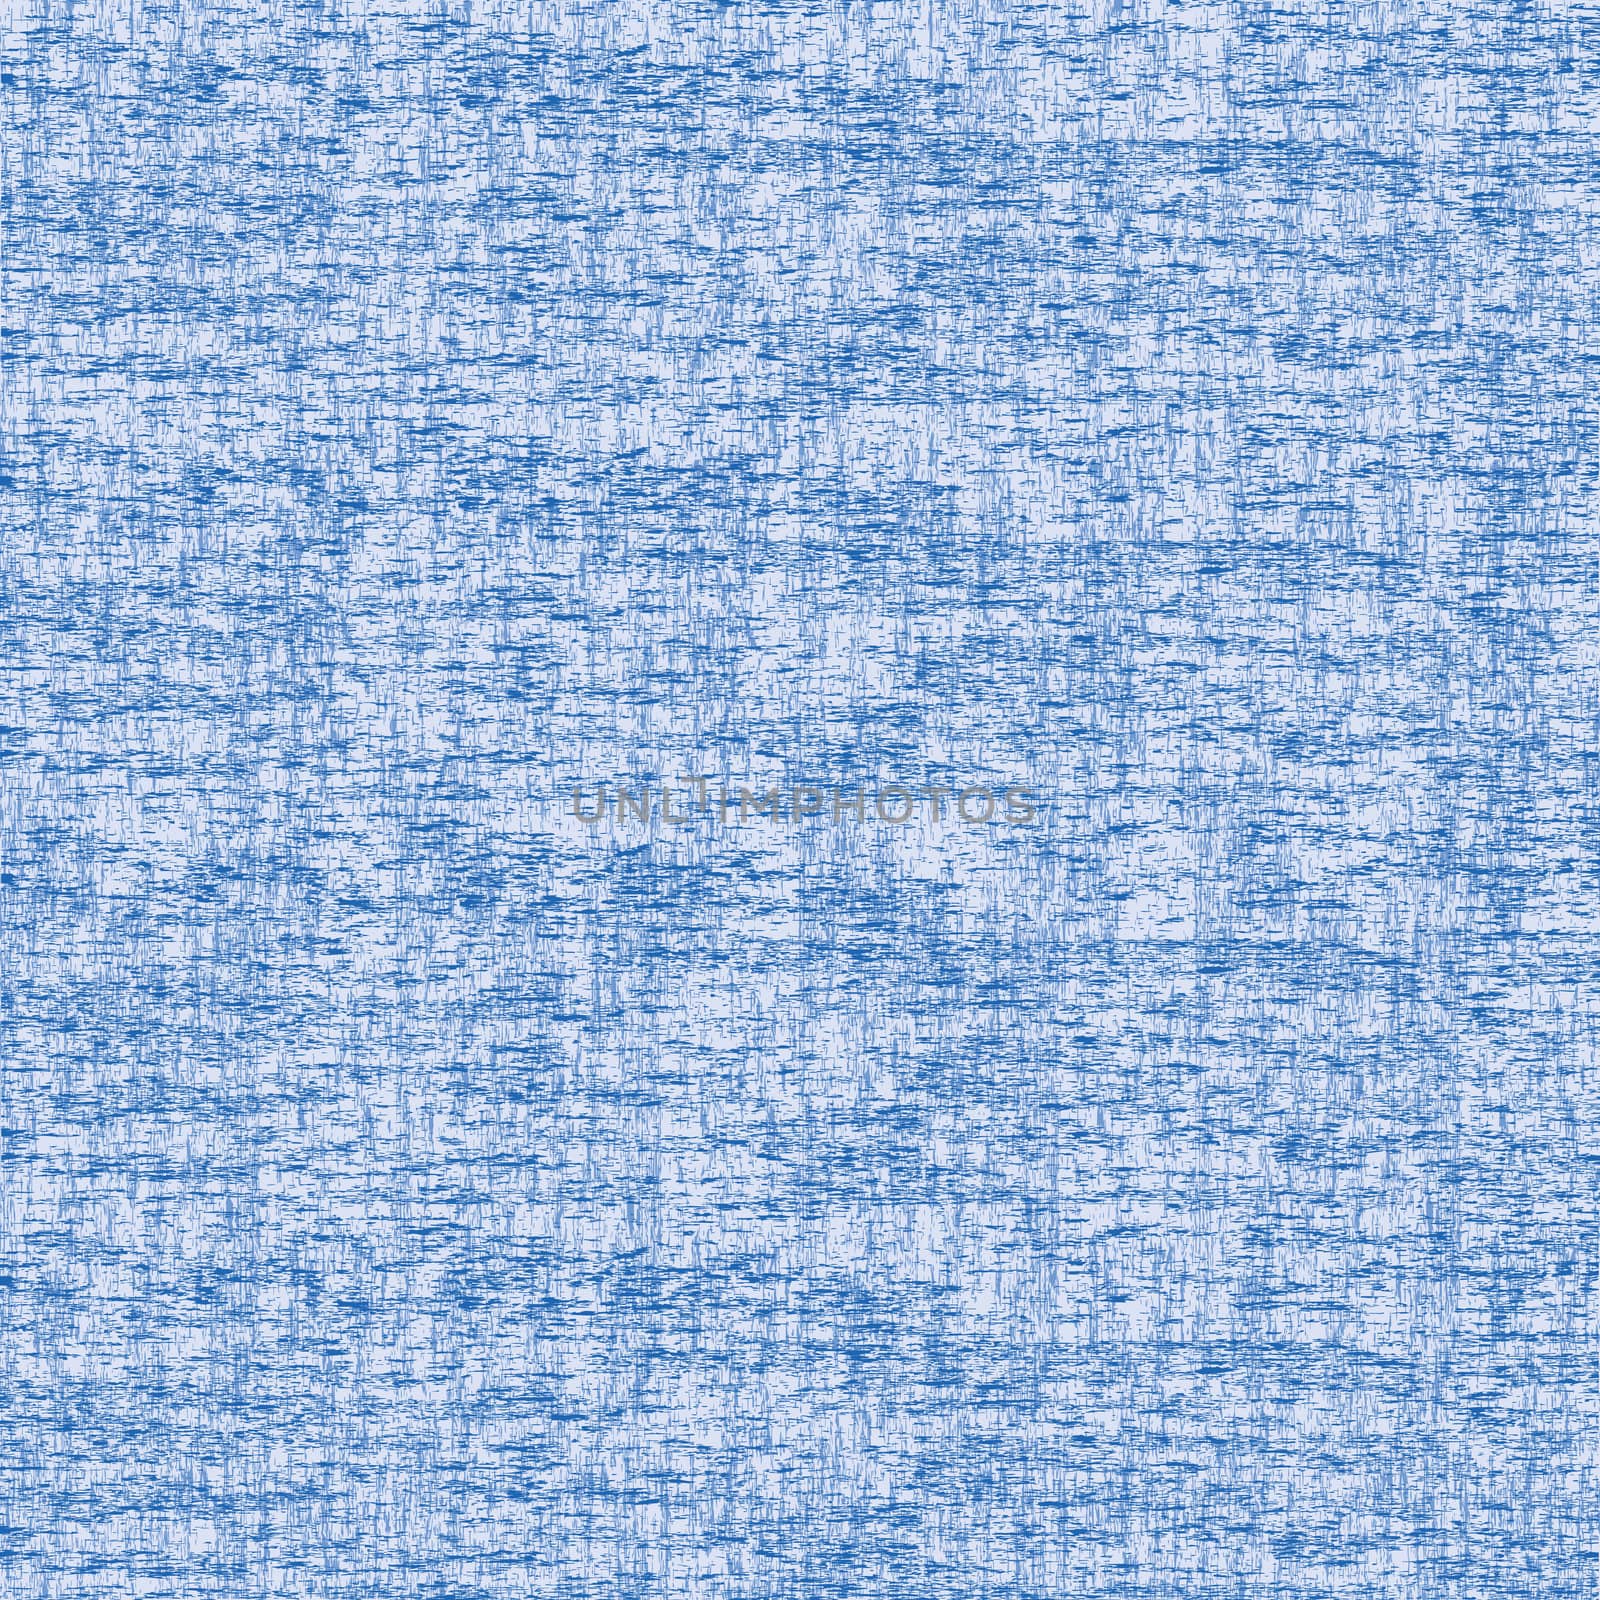 Grunge blue texture background by hibrida13